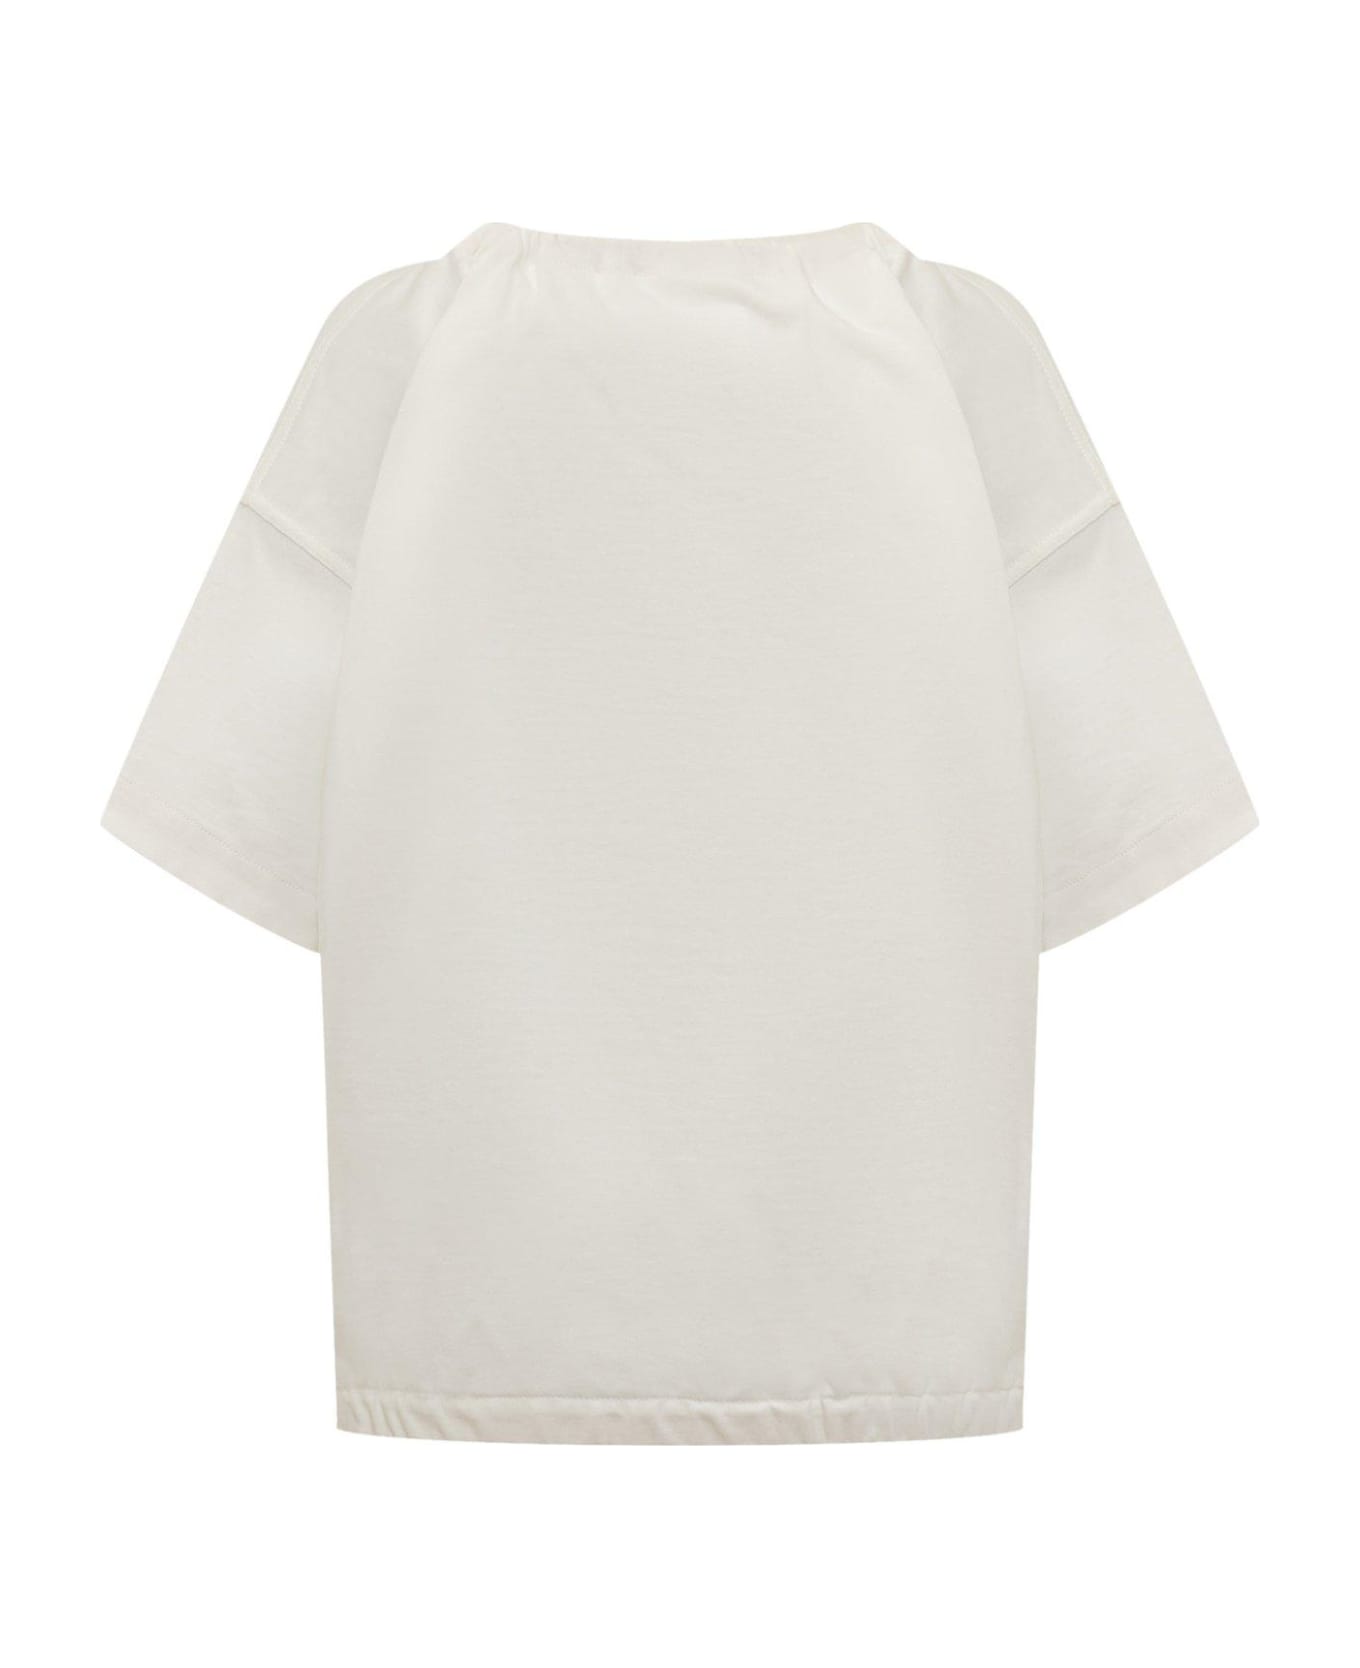 Jil Sander + Bow-detailed Short-sleeved Blouse - White